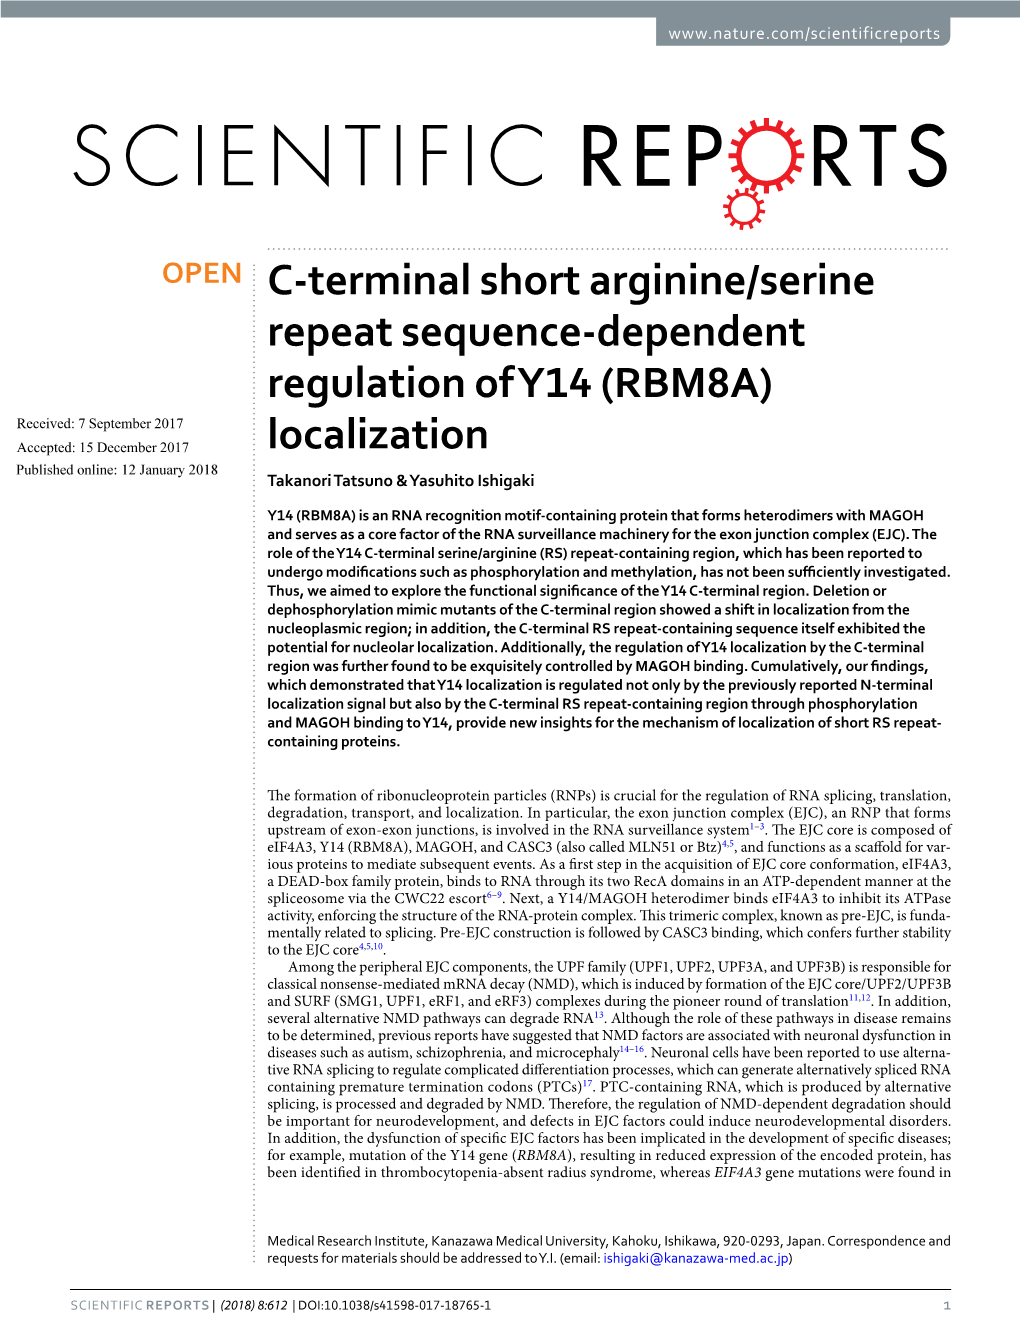 C-Terminal Short Arginine/Serine Repeat Sequence